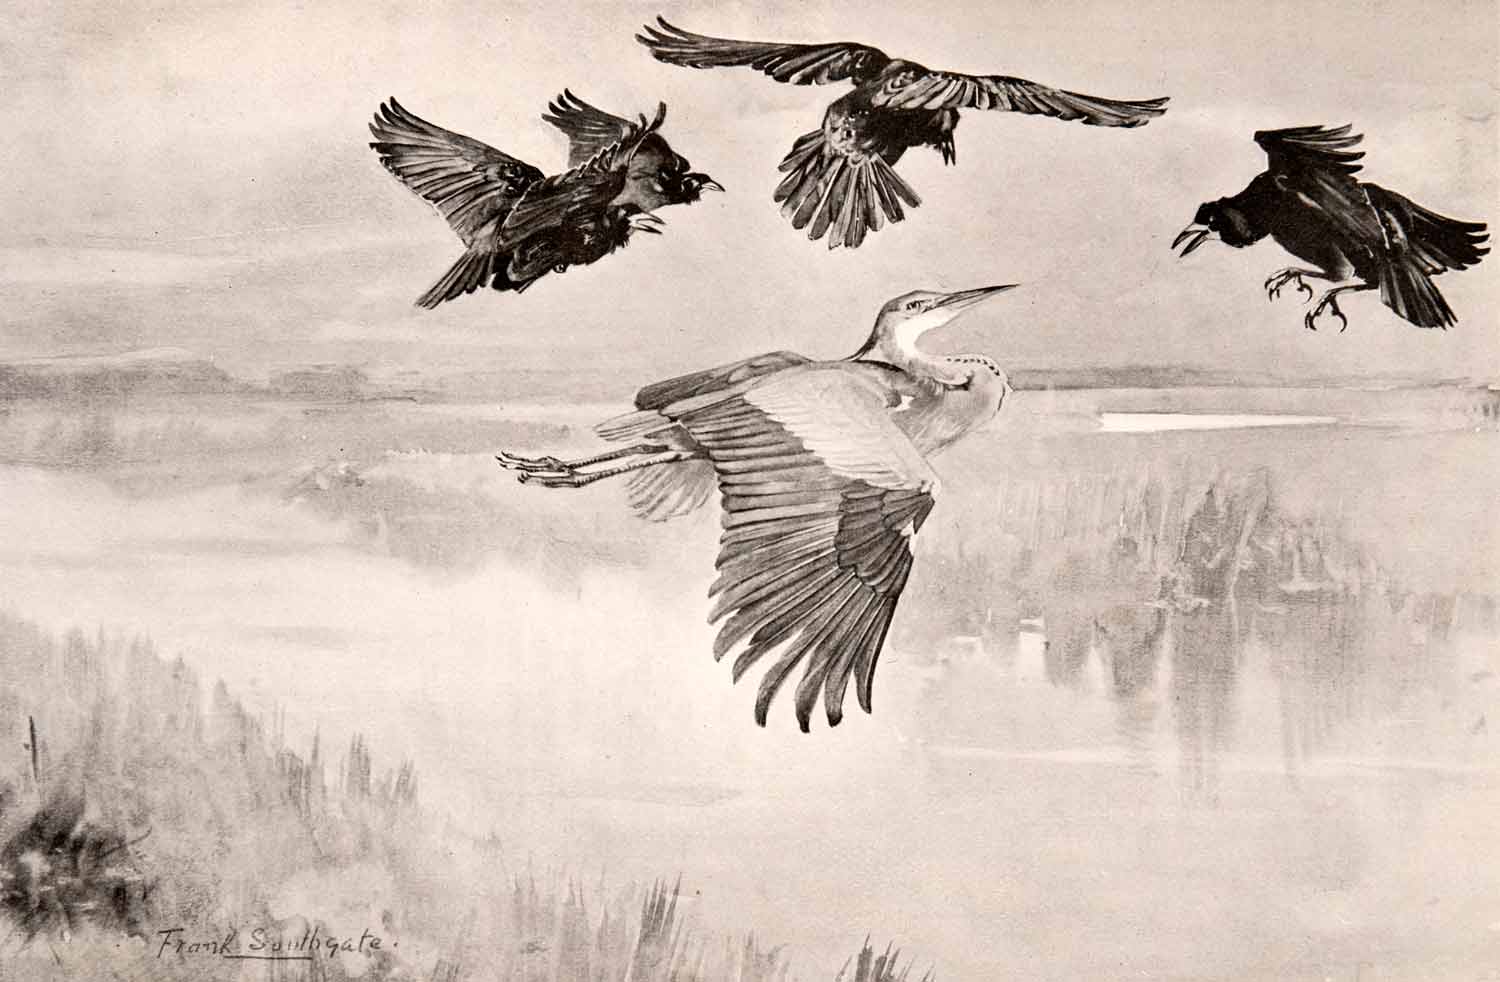 1906 Print Frank Southgate Rooks Mobbing Heron Bird Lake Marsh Wetlands XGCA5